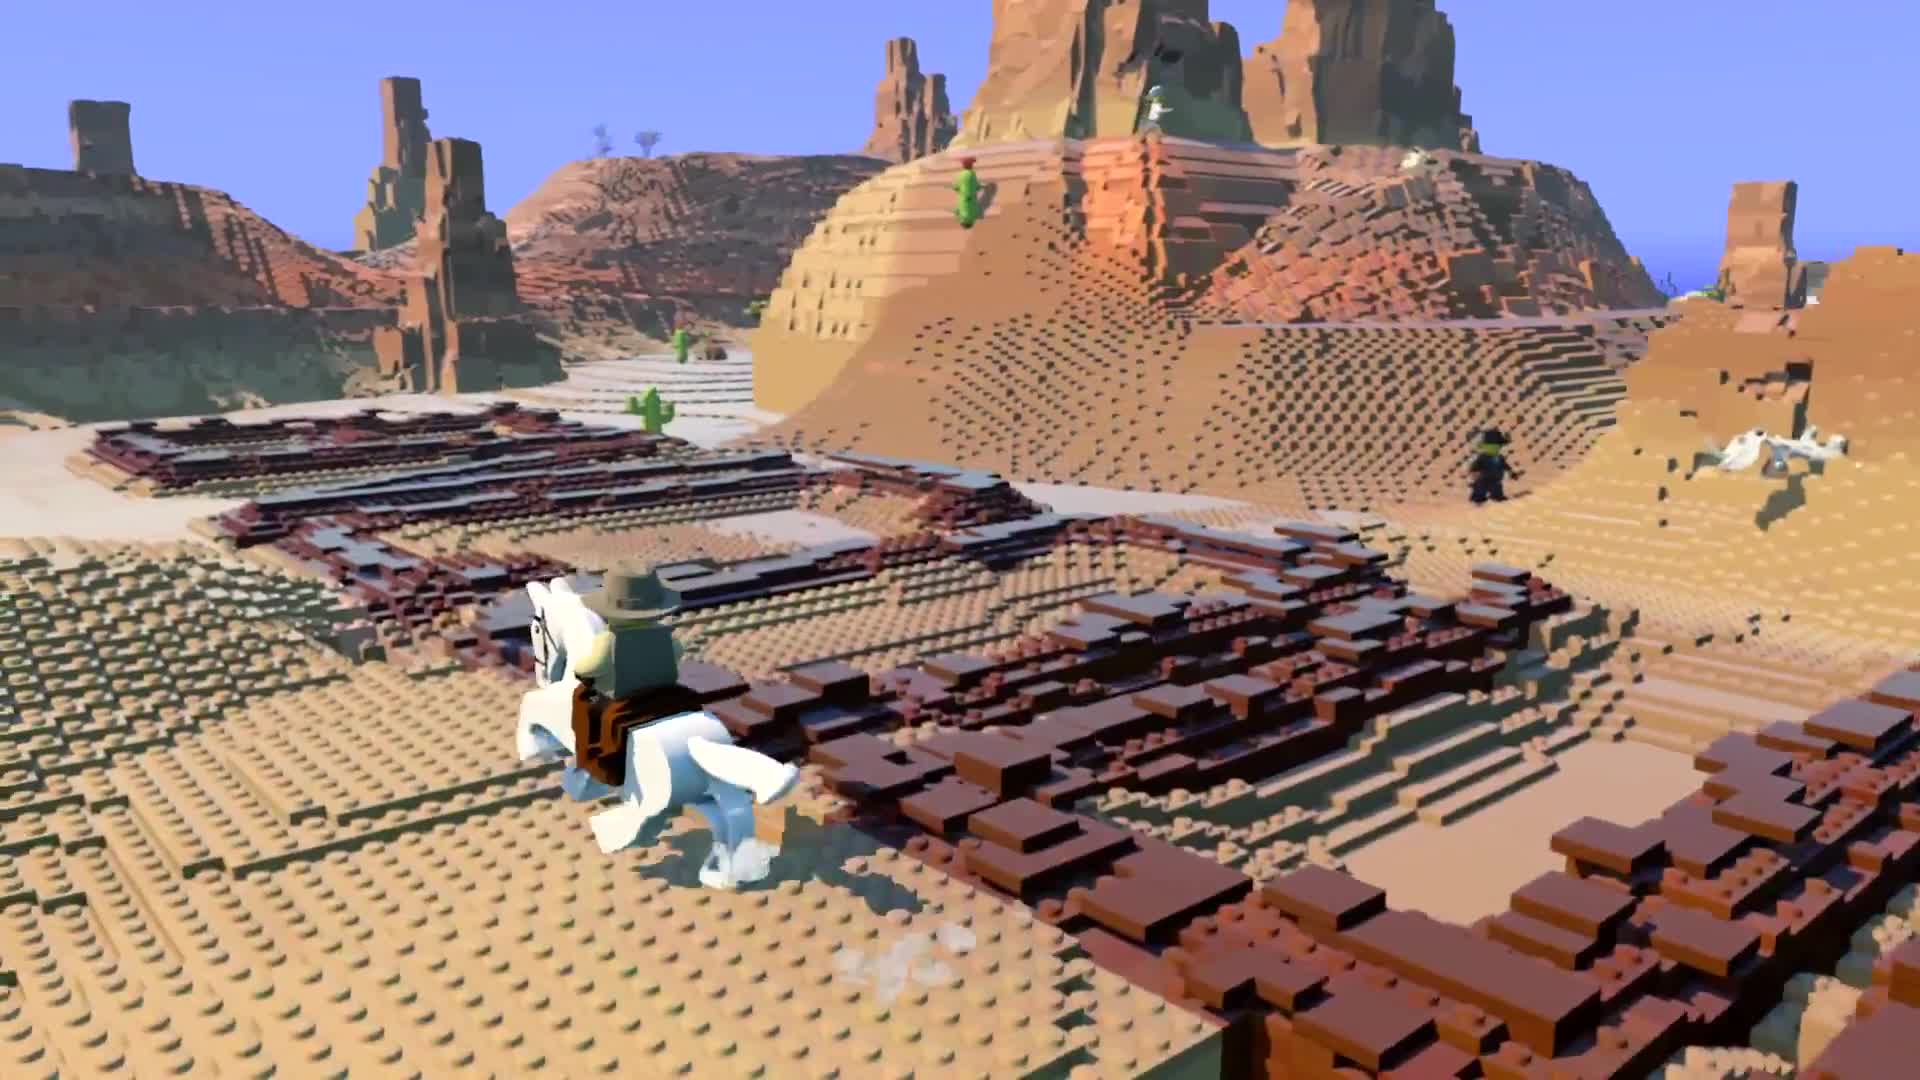 Lego Worlds - trailer